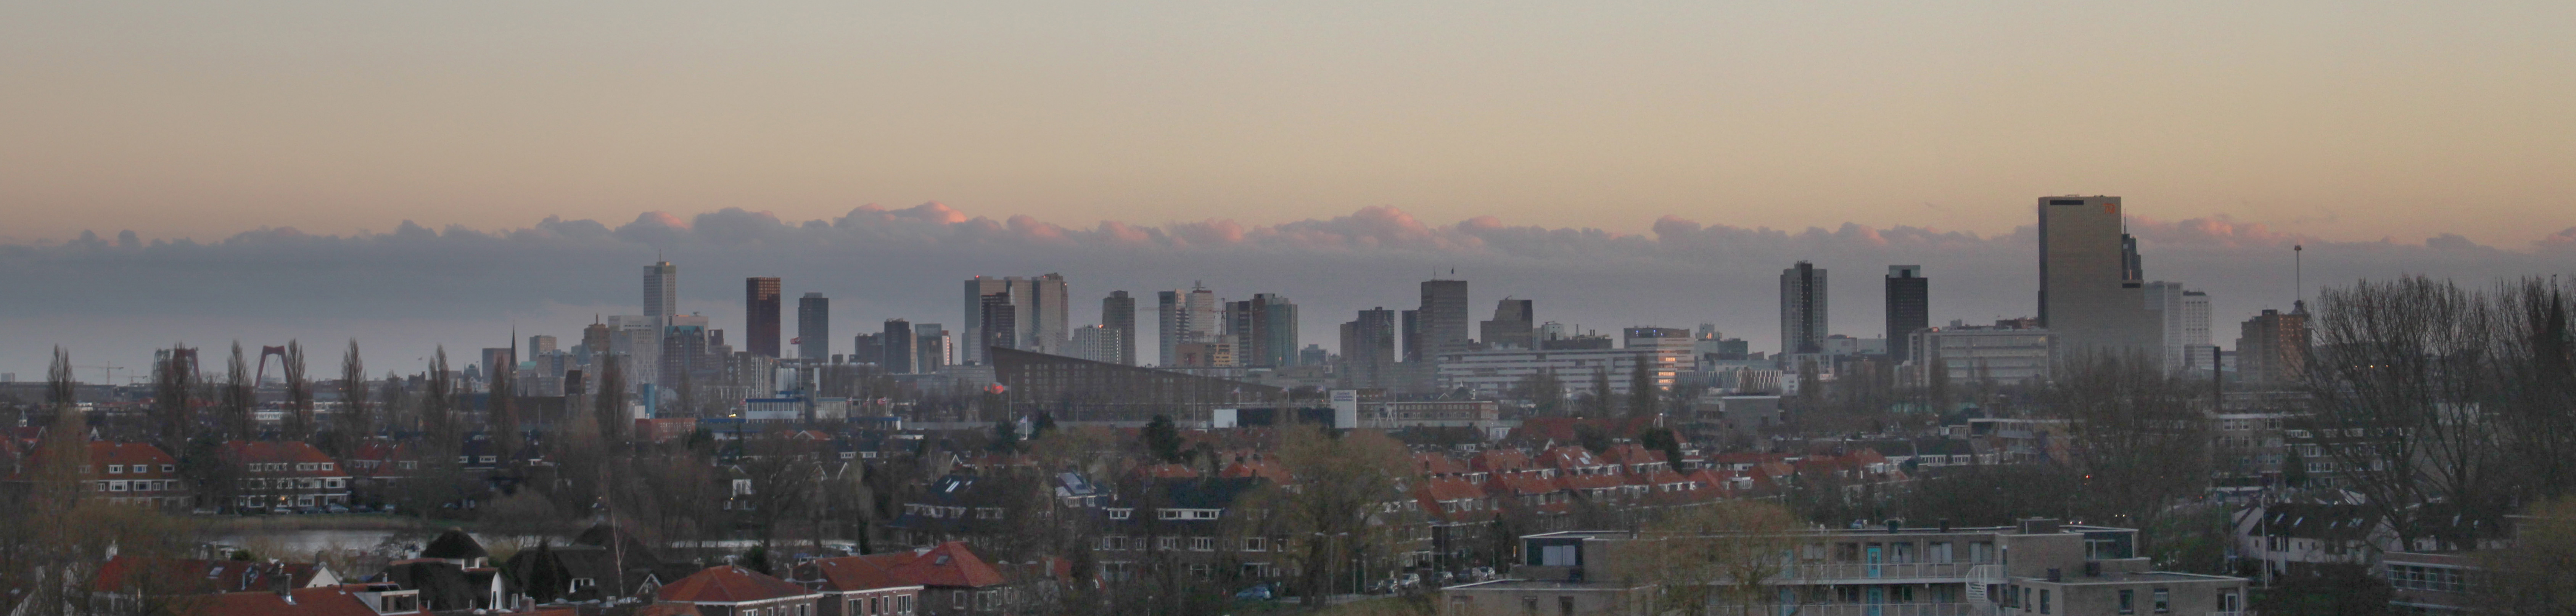 Skyline Rotterdam from Schiebroek cropped.jpg